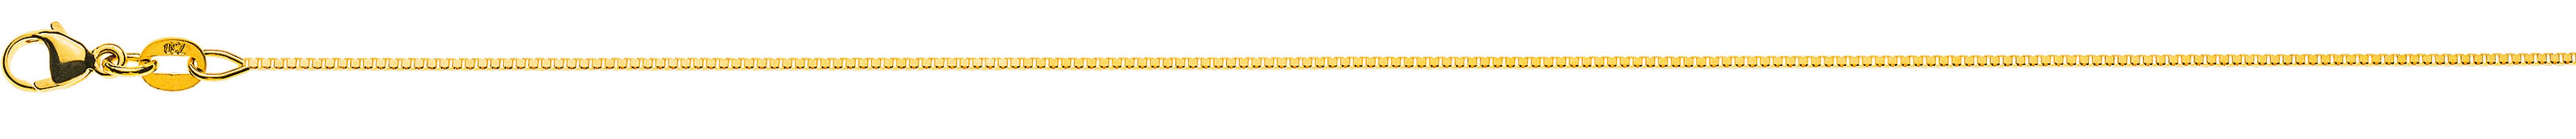 AURONOS Prestige Halskette Gelbgold 18K Venezianerkette diamantiert 36cm 0.8mm